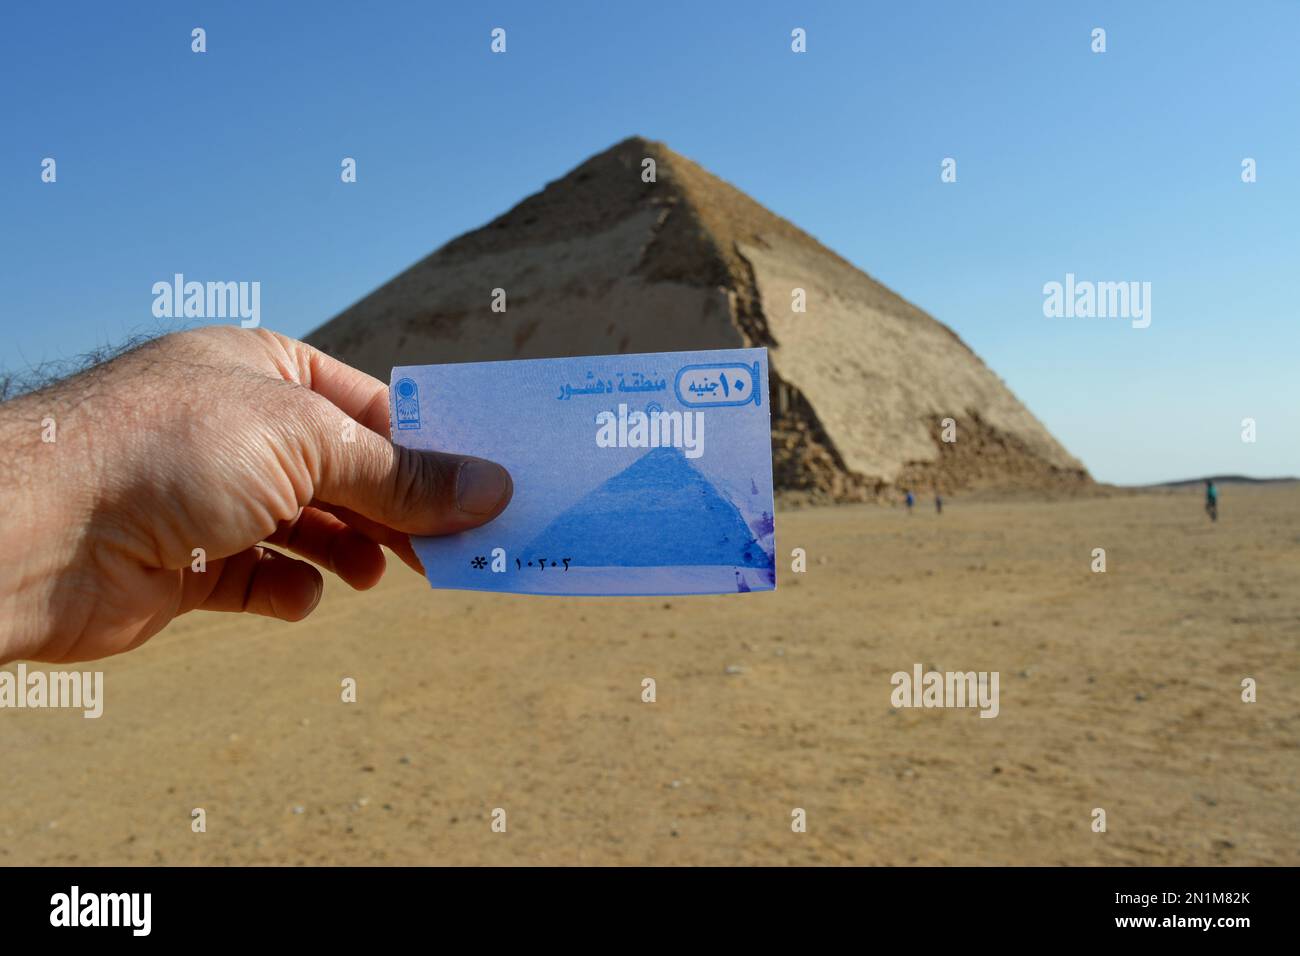 Das Ticket für die verbogene Pyramide von König Sneferu an ihrem Standort, Ein einzigartiges Beispiel für die frühe Pyramidenentwicklung in Ägypten, das sich in Dahshur Badrashin Ba befindet Stockfoto